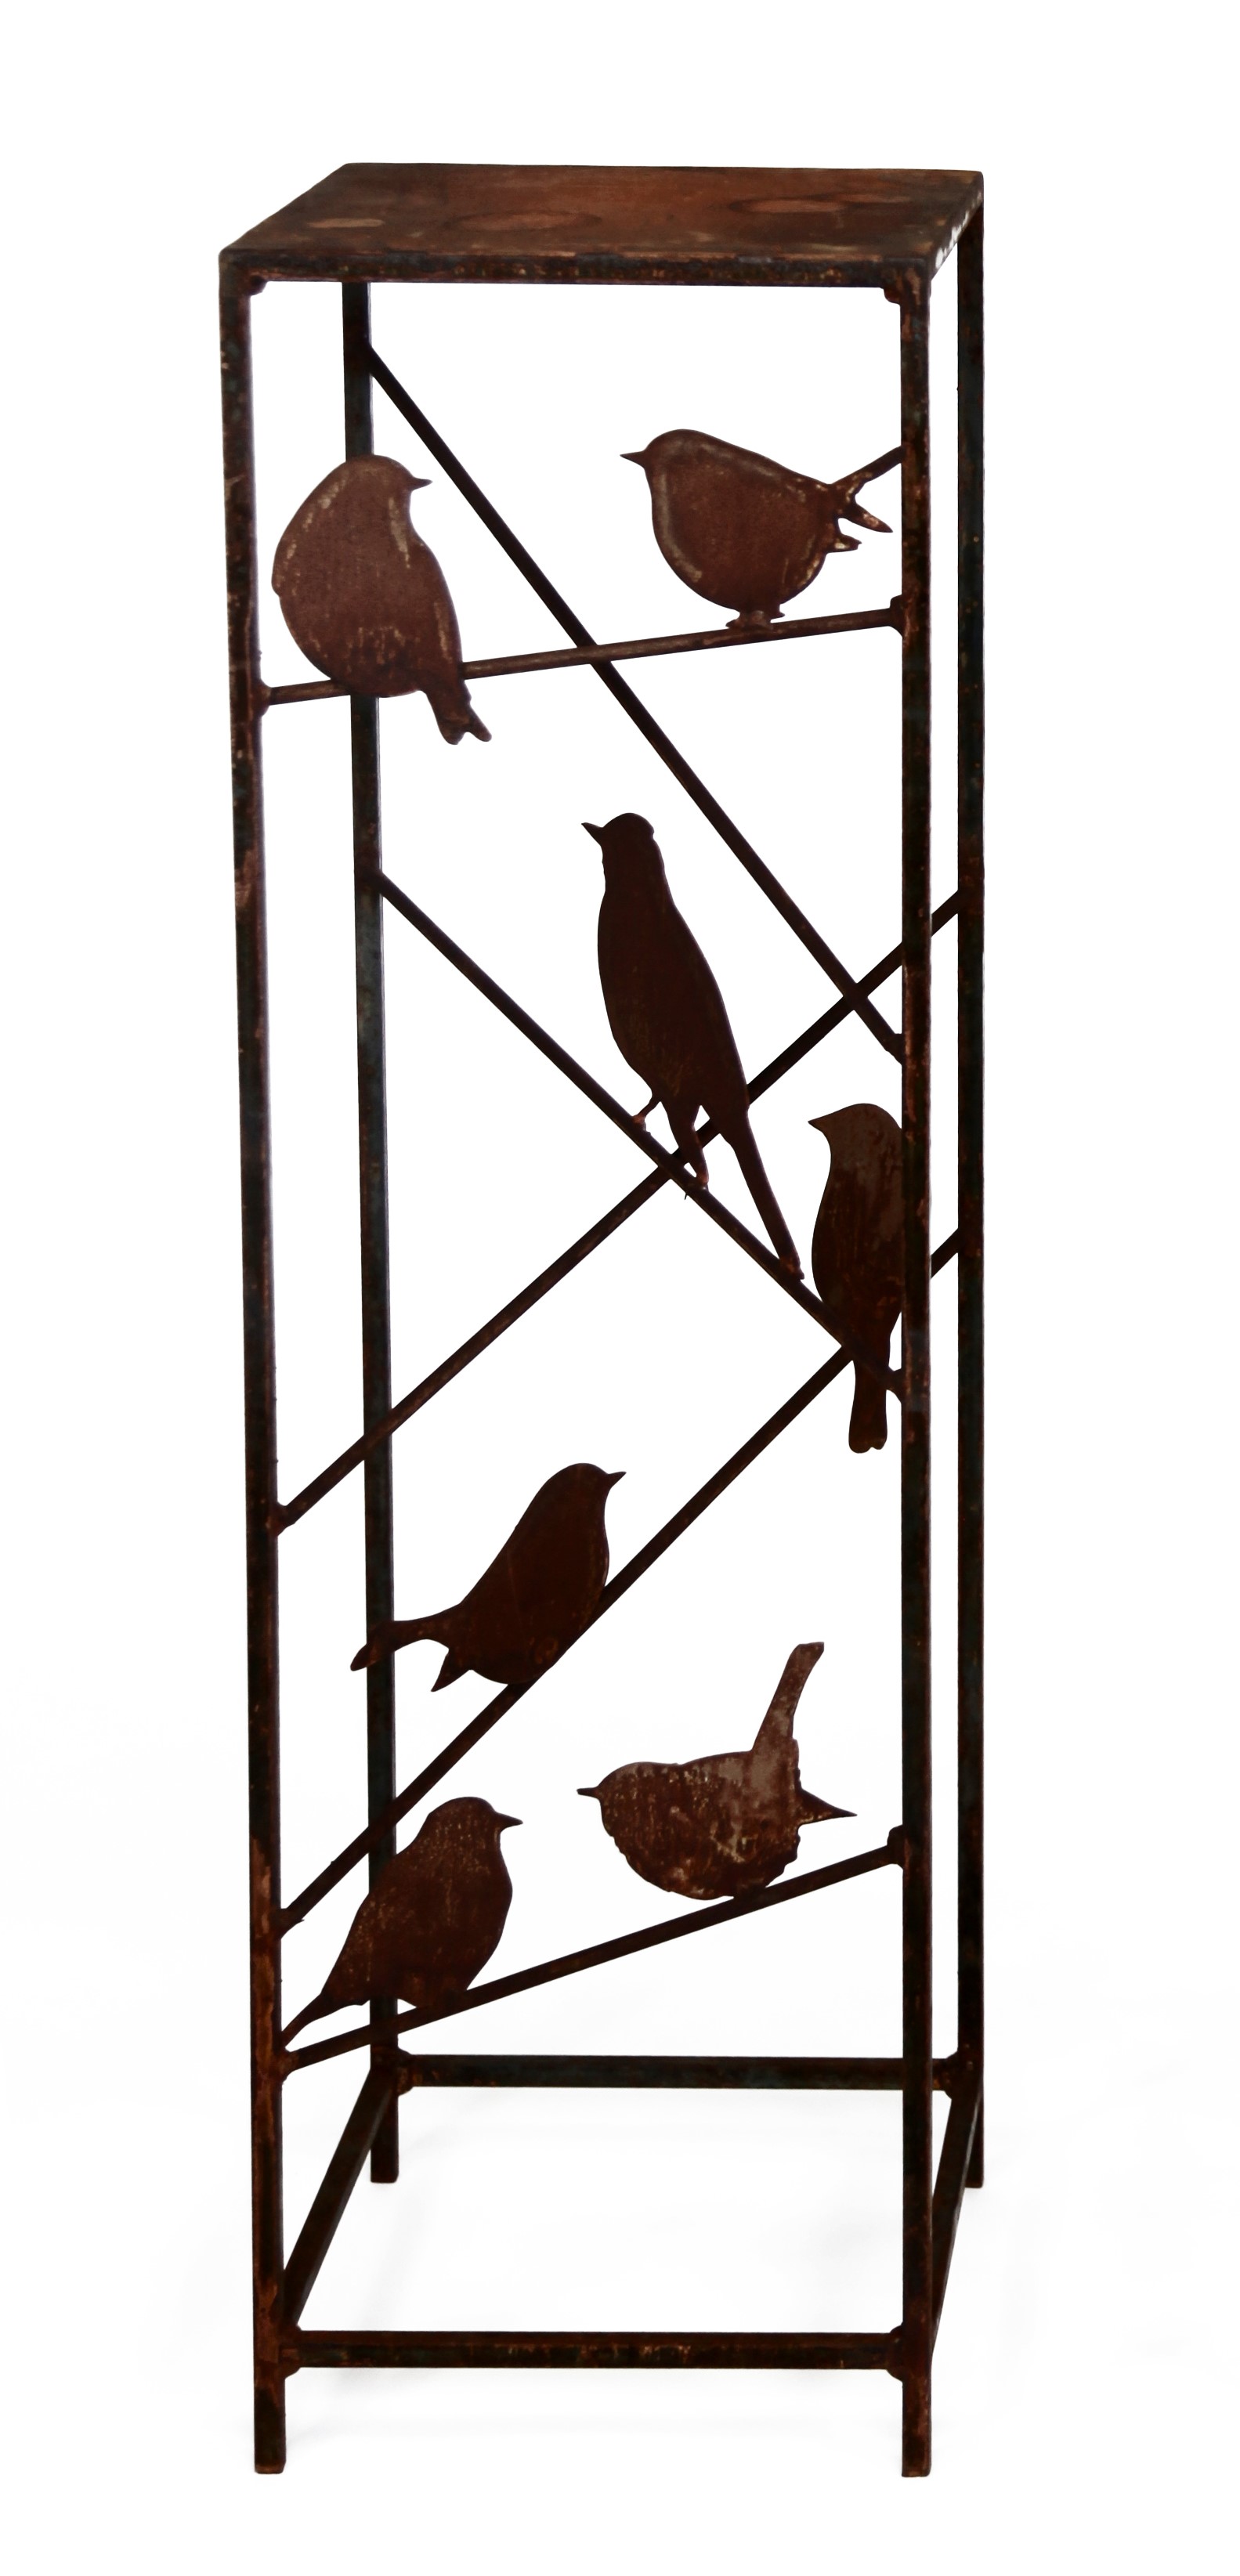 Säule aus Vierkantstahl mit 6 Vögel auf Stäben, Edelrost, H 100cm, 30 x 30cm